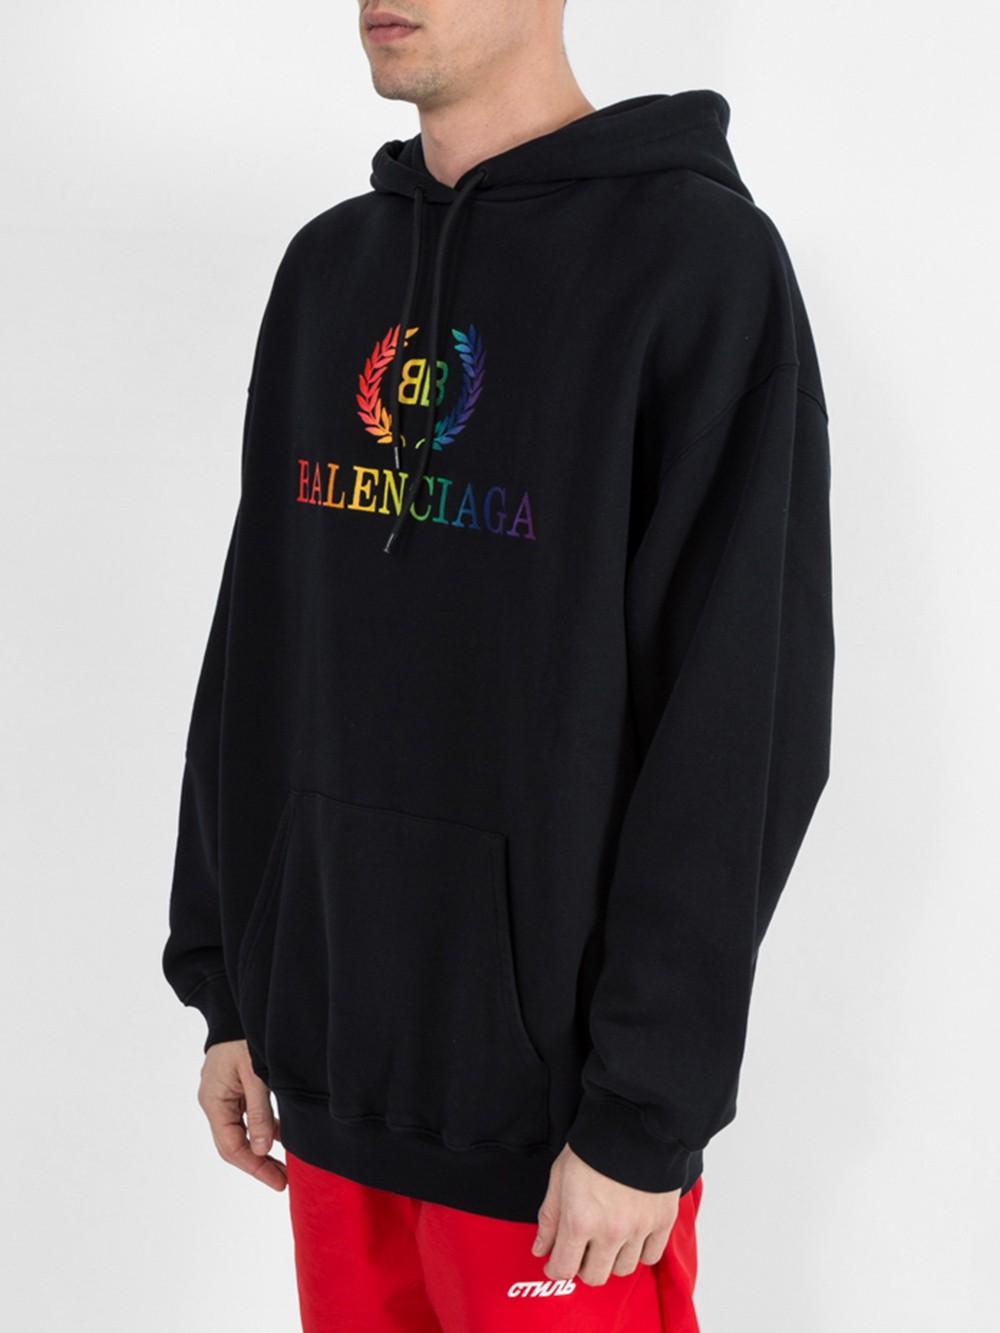 balenciaga rainbow sweatshirt